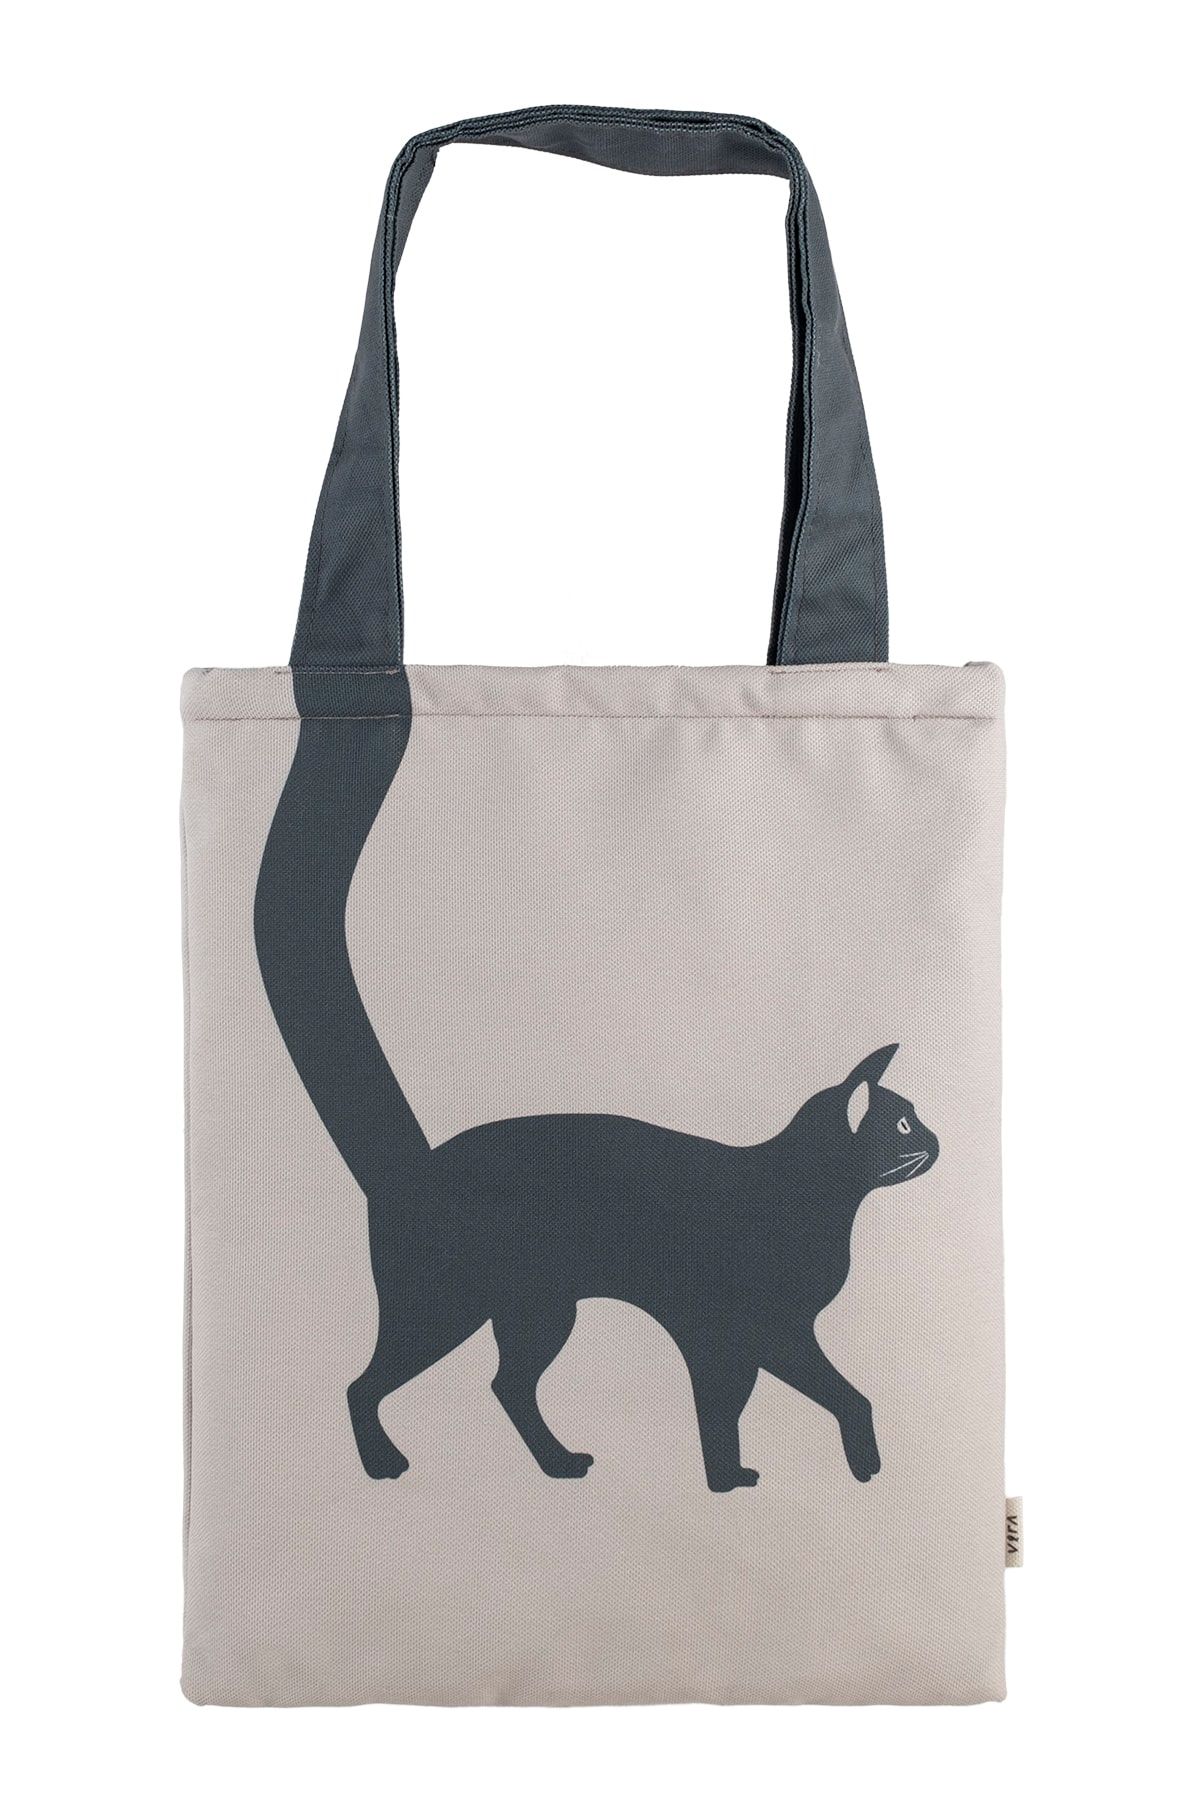 Design Vira Gray Cat Tote Bag